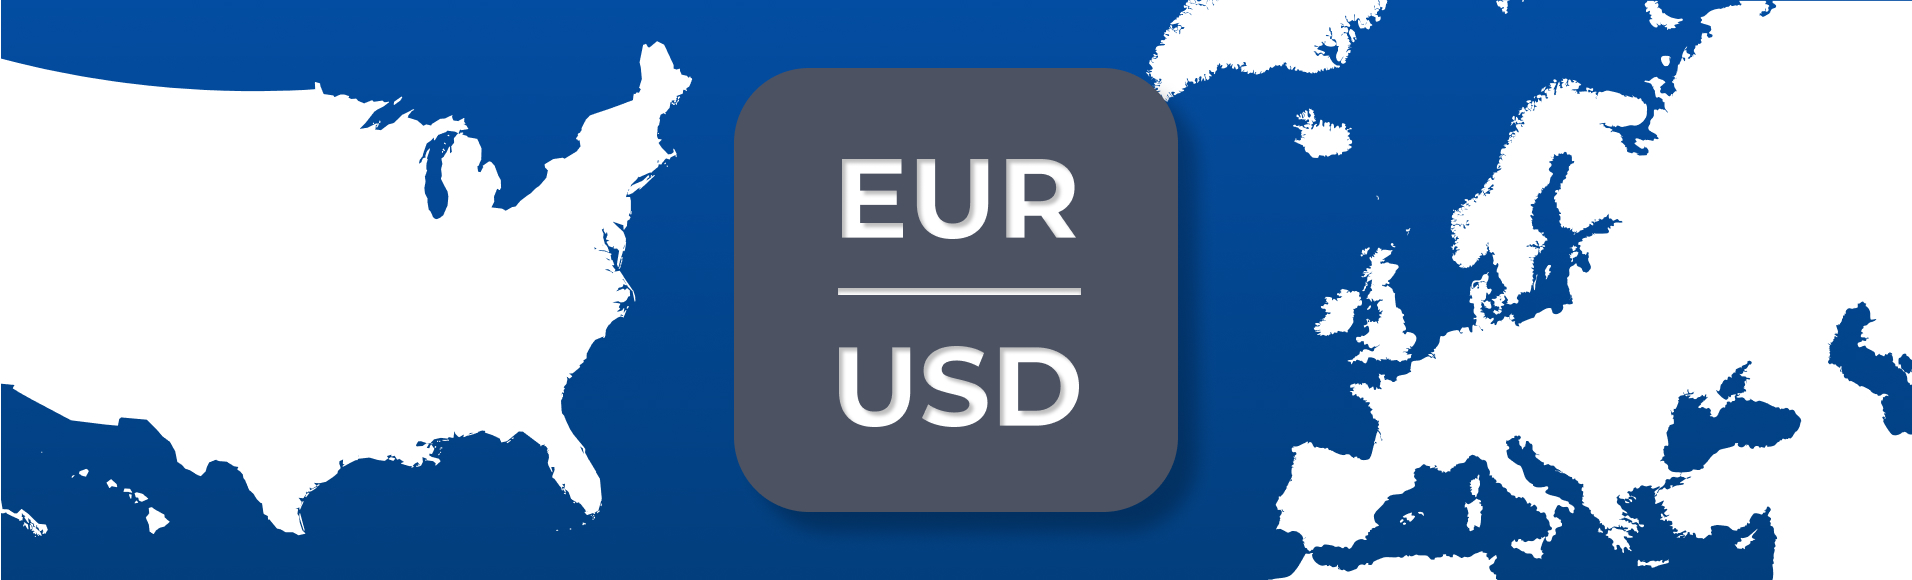 Основные валютные пары. Часть 1: Европа и Америка